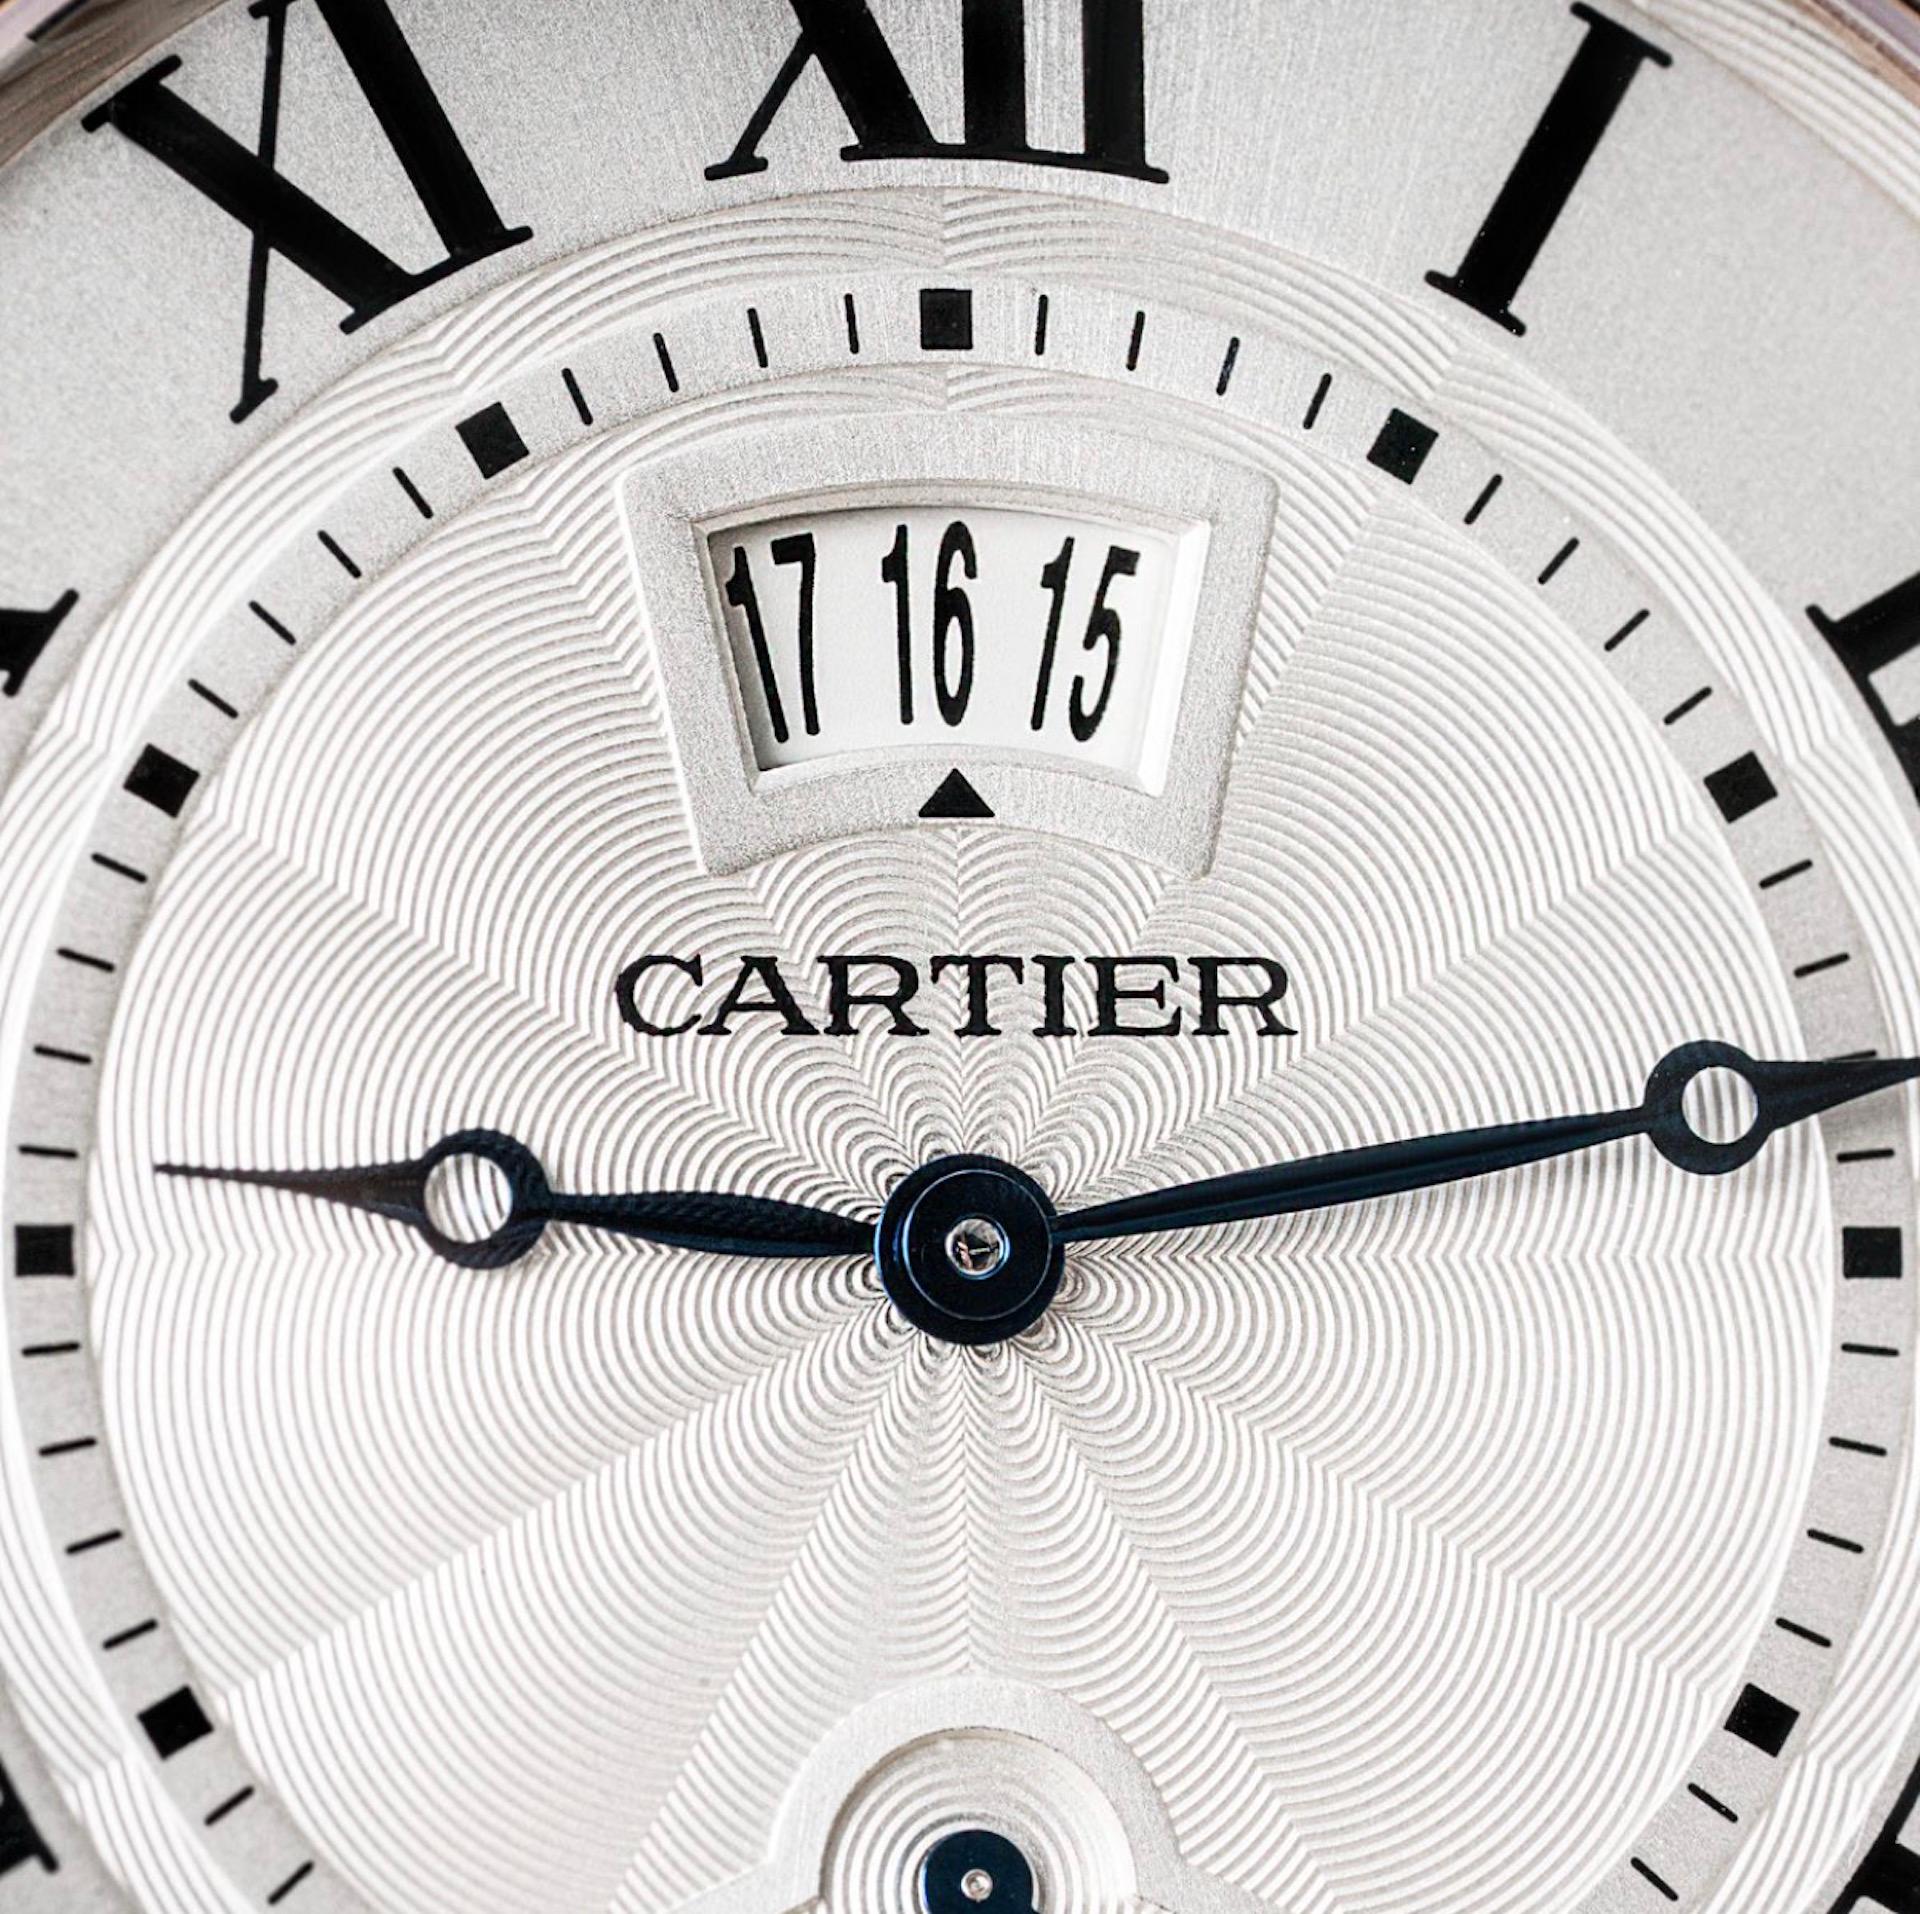 Une montre-bracelet Cartier Rotonde en or rose. Dotée d'un cadran argenté guilloché avec chiffres romains, d'un affichage de la date, d'un indicateur de réserve de marche et d'aiguilles en acier bleui. La montre est équipée d'un verre saphir, d'un